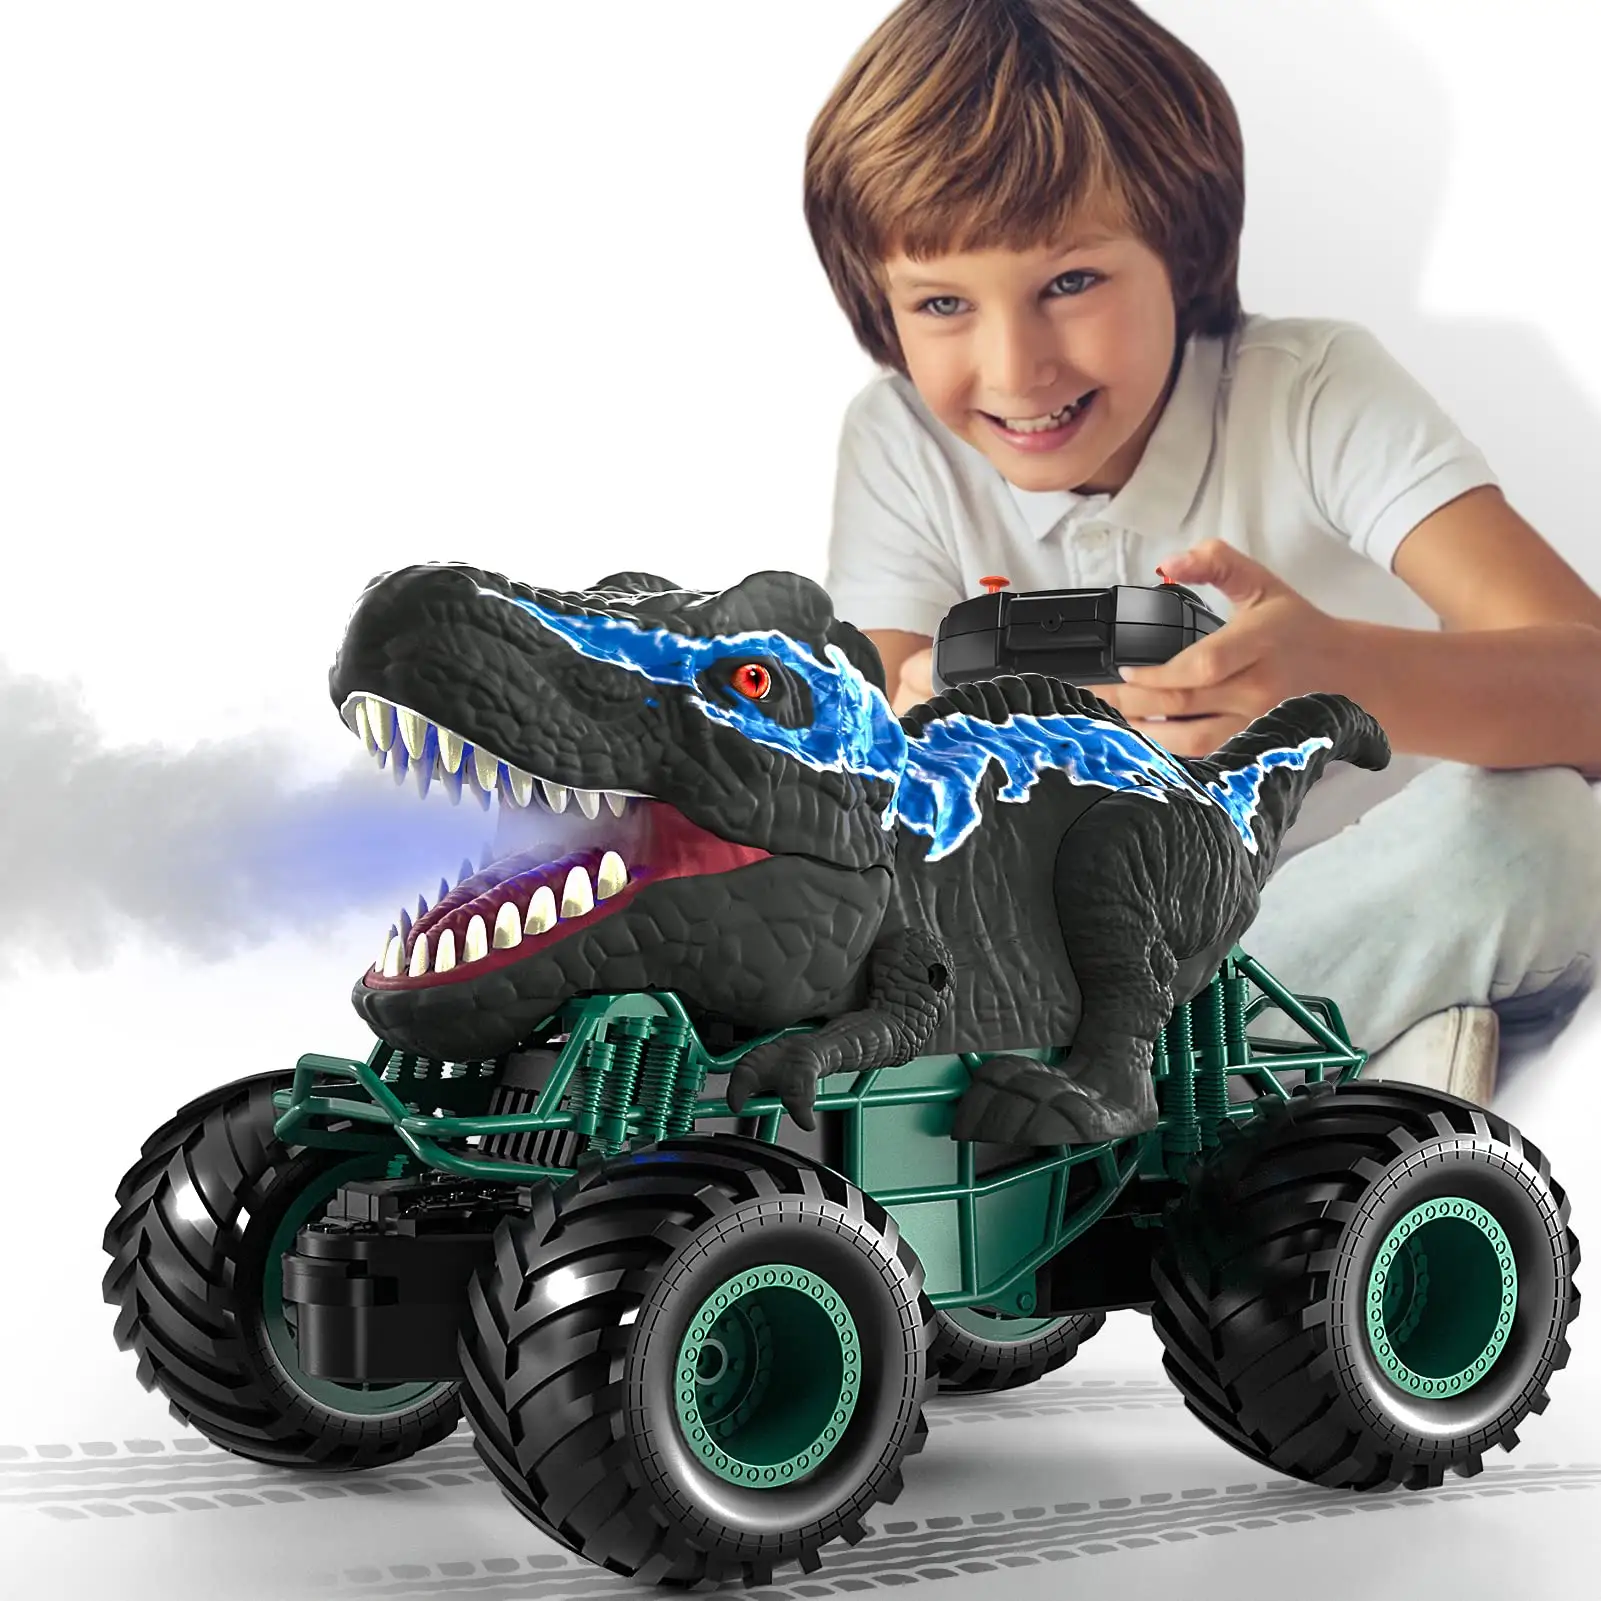 Fern gesteuerter Dinosaurier-Spielzeug-LKW für Kinder, 2.4G, Simulation Dino, fern gesteuertes Auto, Jurassic Funks teuerung Spielzeug, Amazon Bestseller